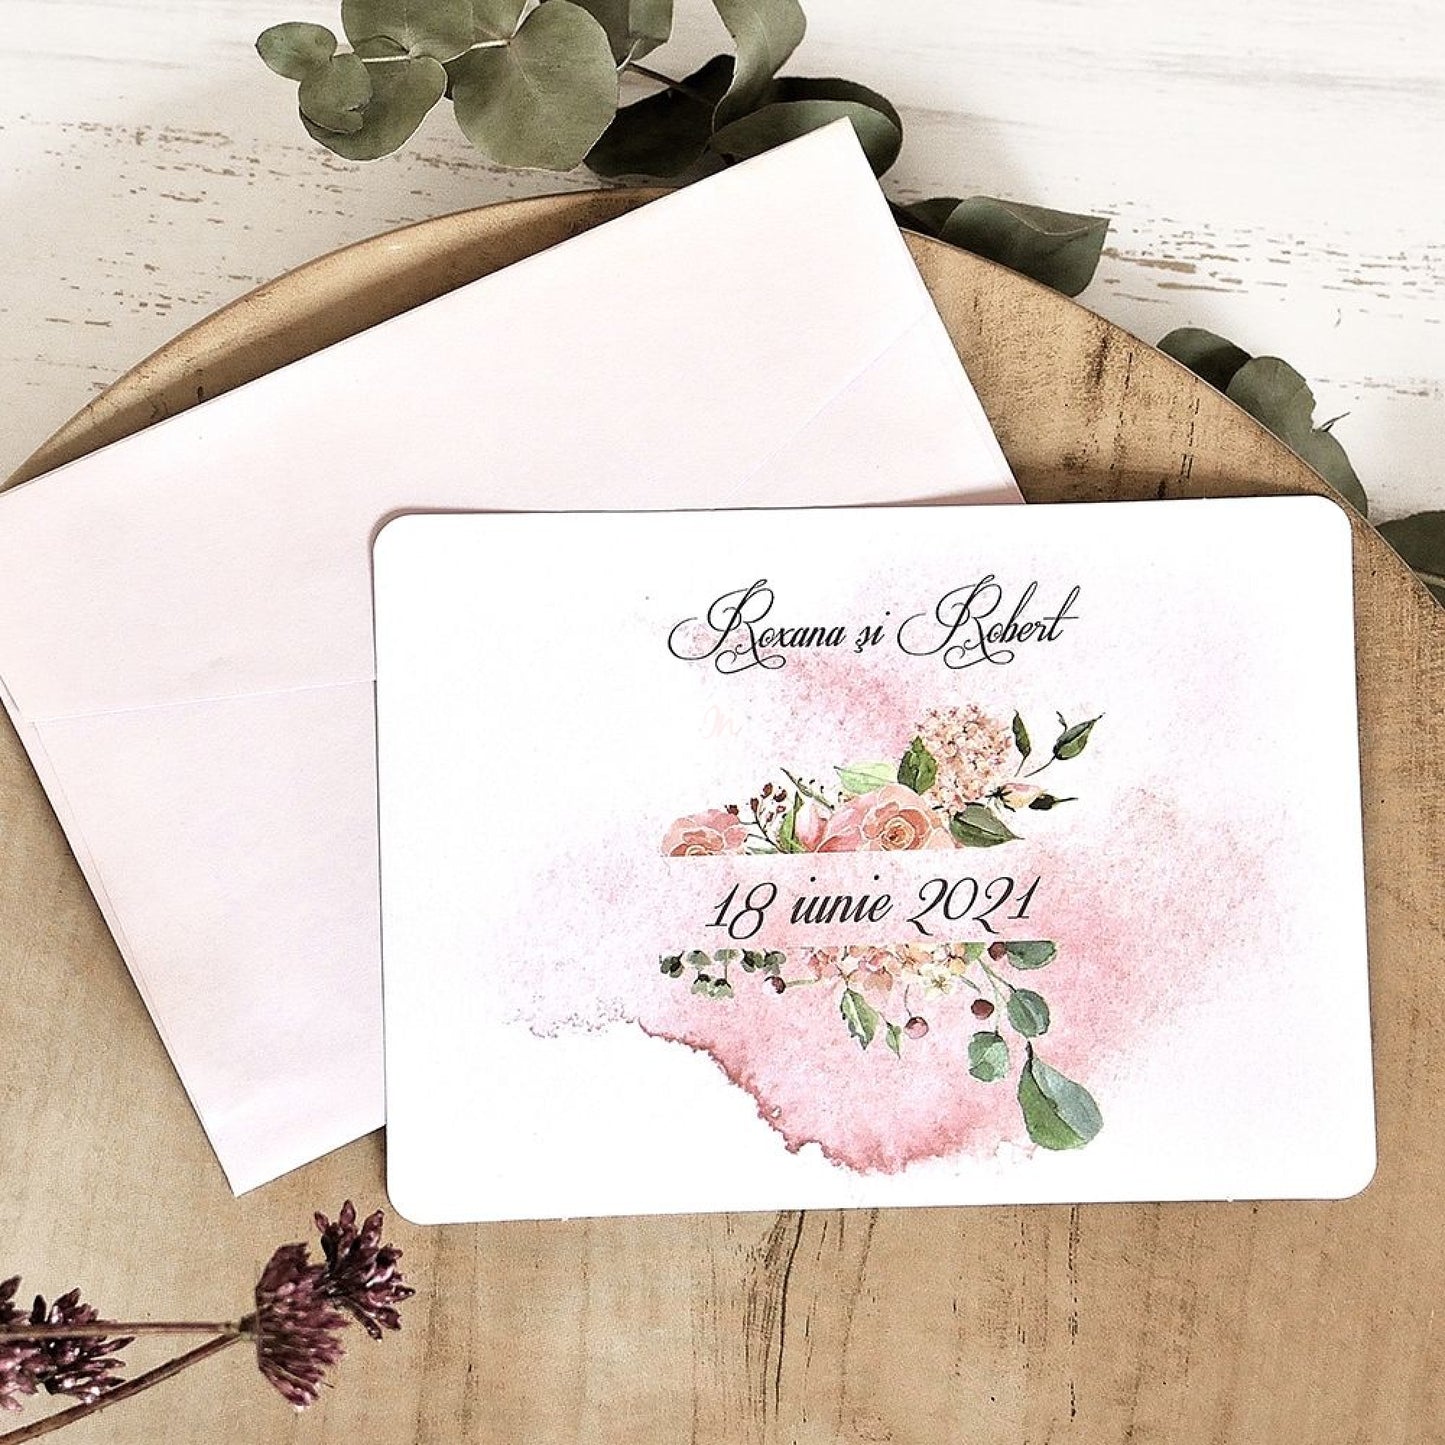 39781-esküvői meghívó-bordó, covid, pink, rózsa, virág, zöld-Erdélyi Esküvői Meghívók